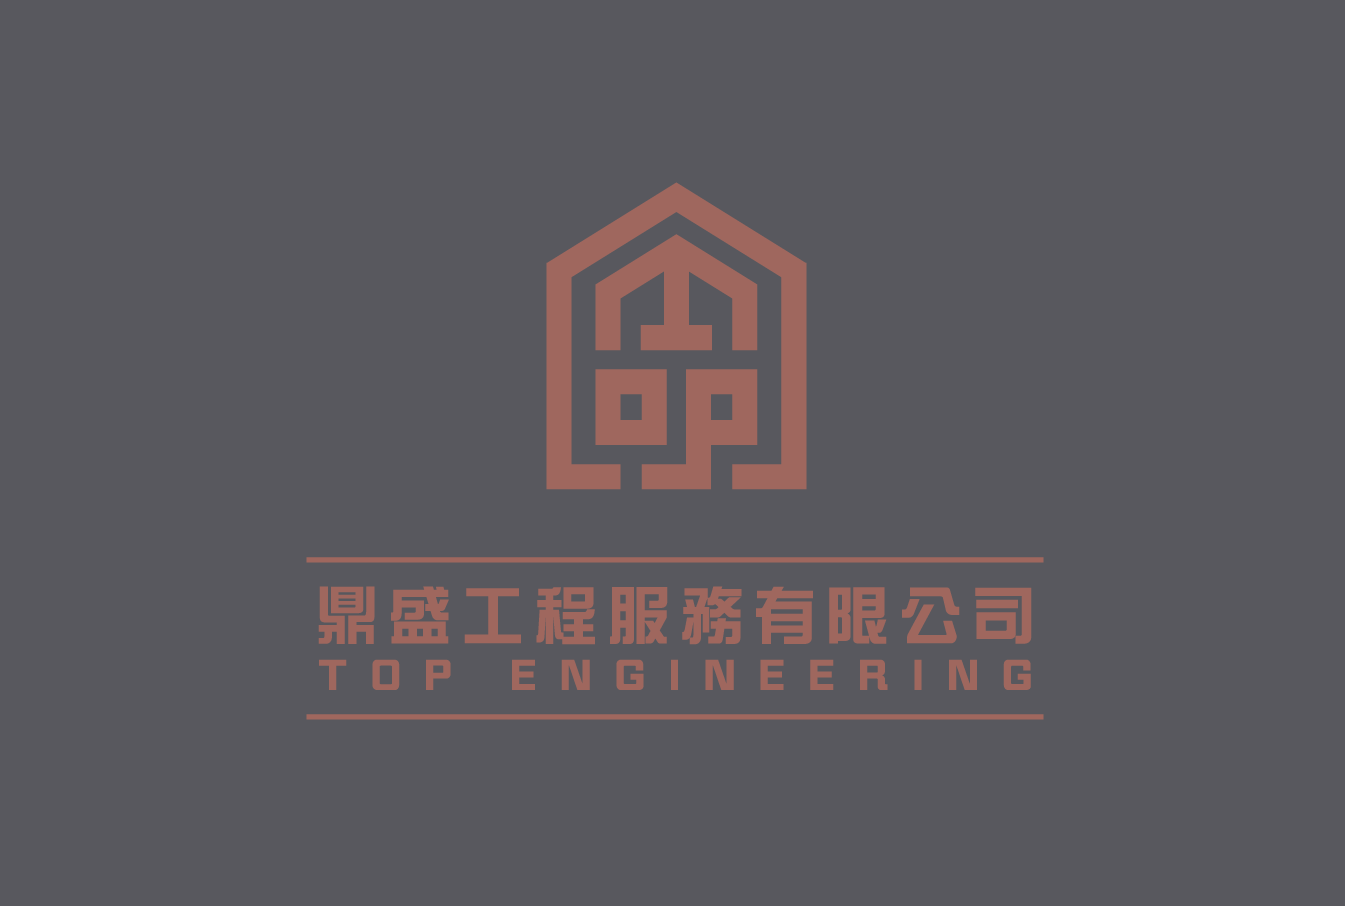 鼎盛工程服務有限公司 Top Engineering